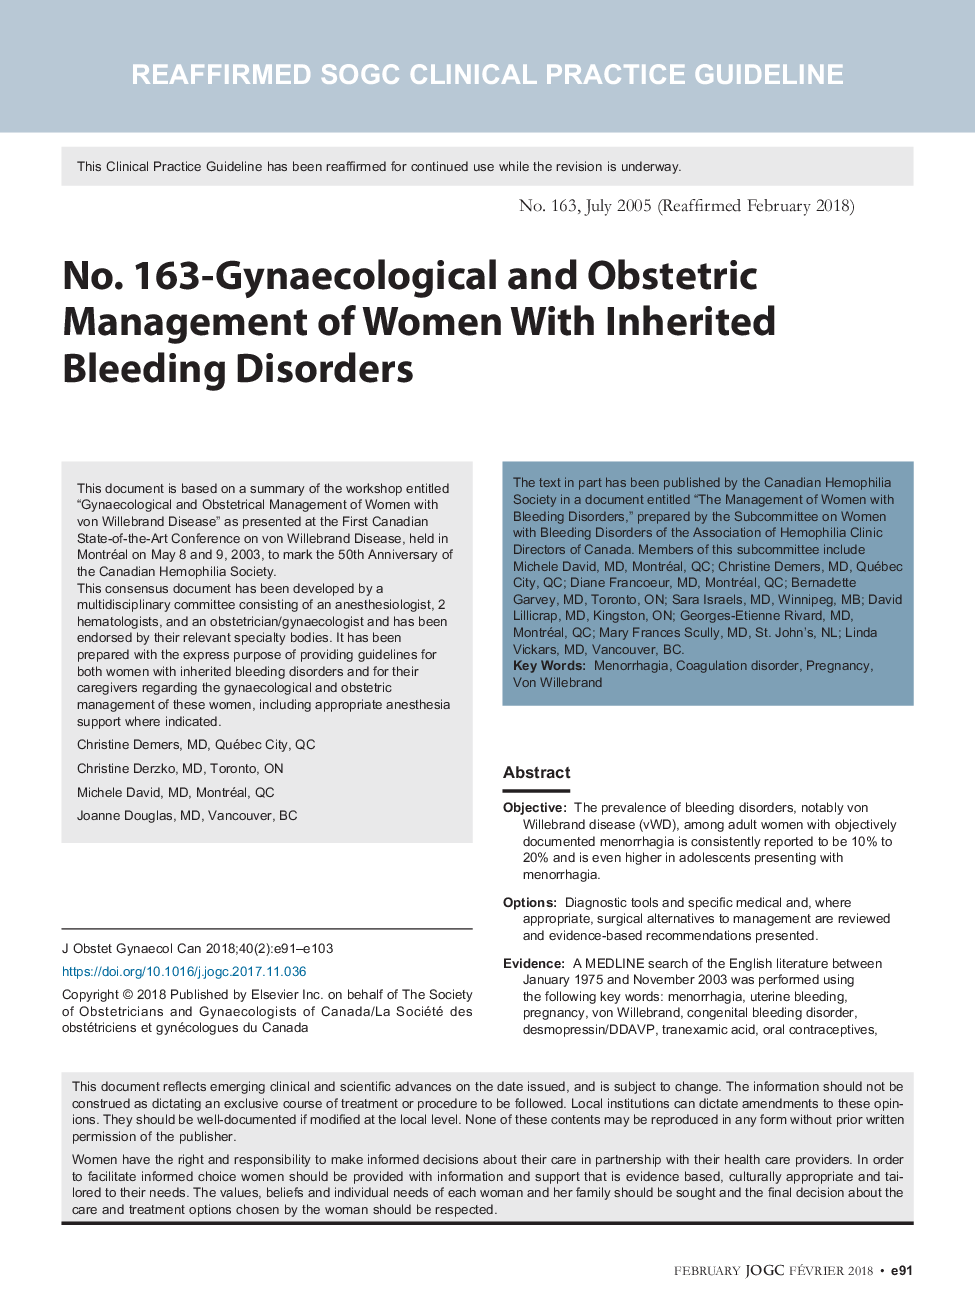 شماره 163 - مدیریت زنان و زایمان زنان مبتلا به اختلالات خونریزی به ارث می رسد 